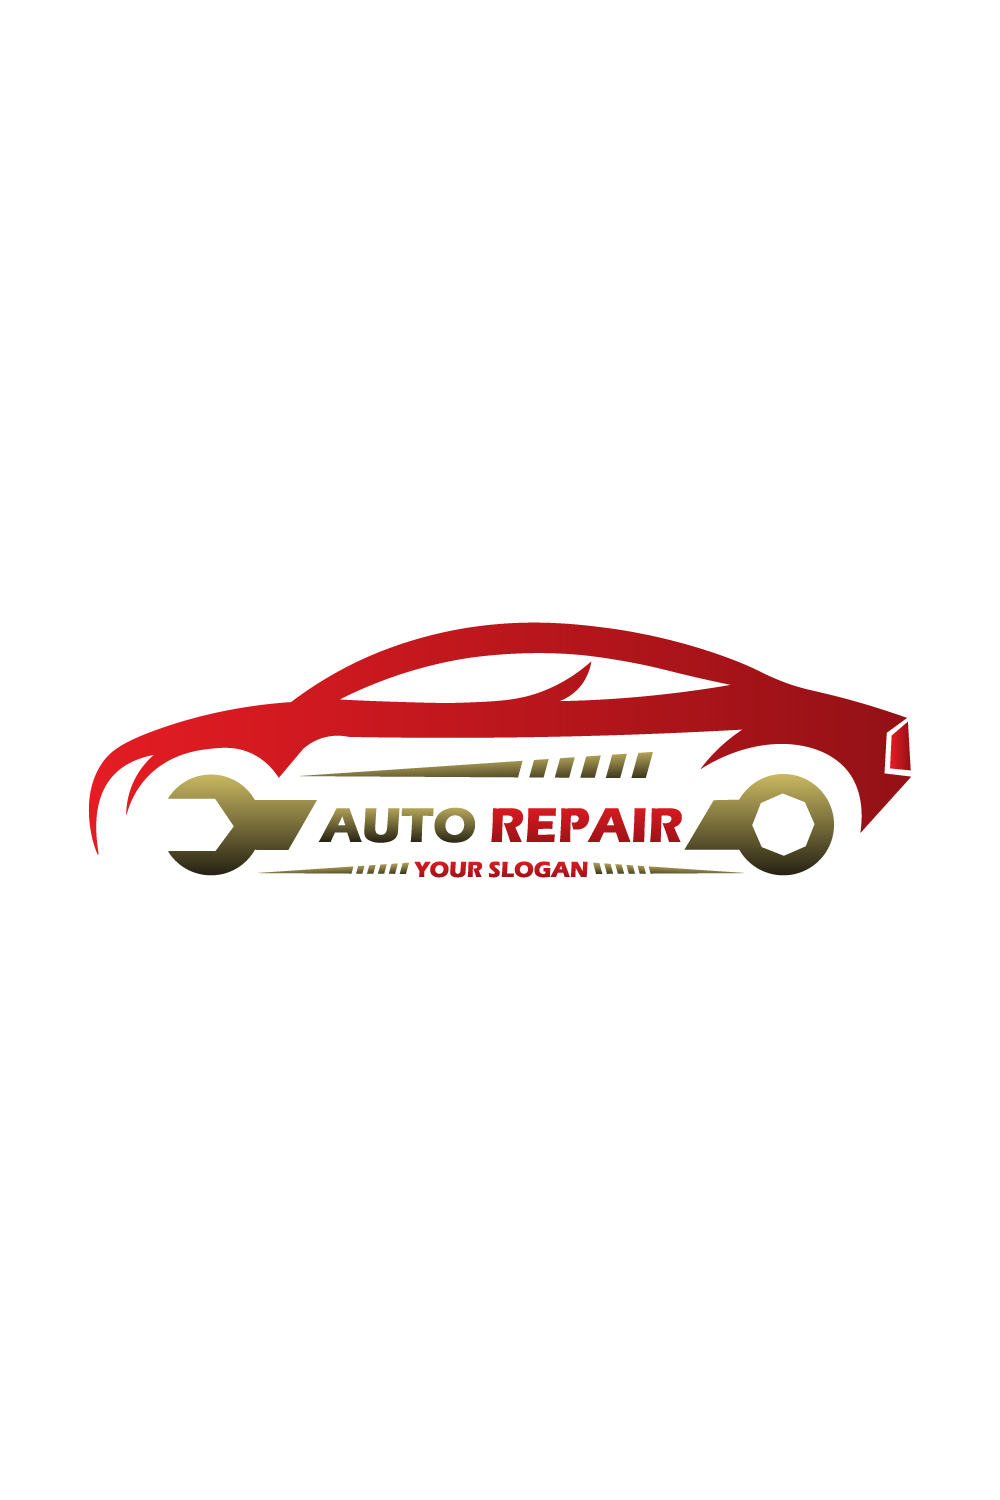 Car Repair Logo pinterest preview image.